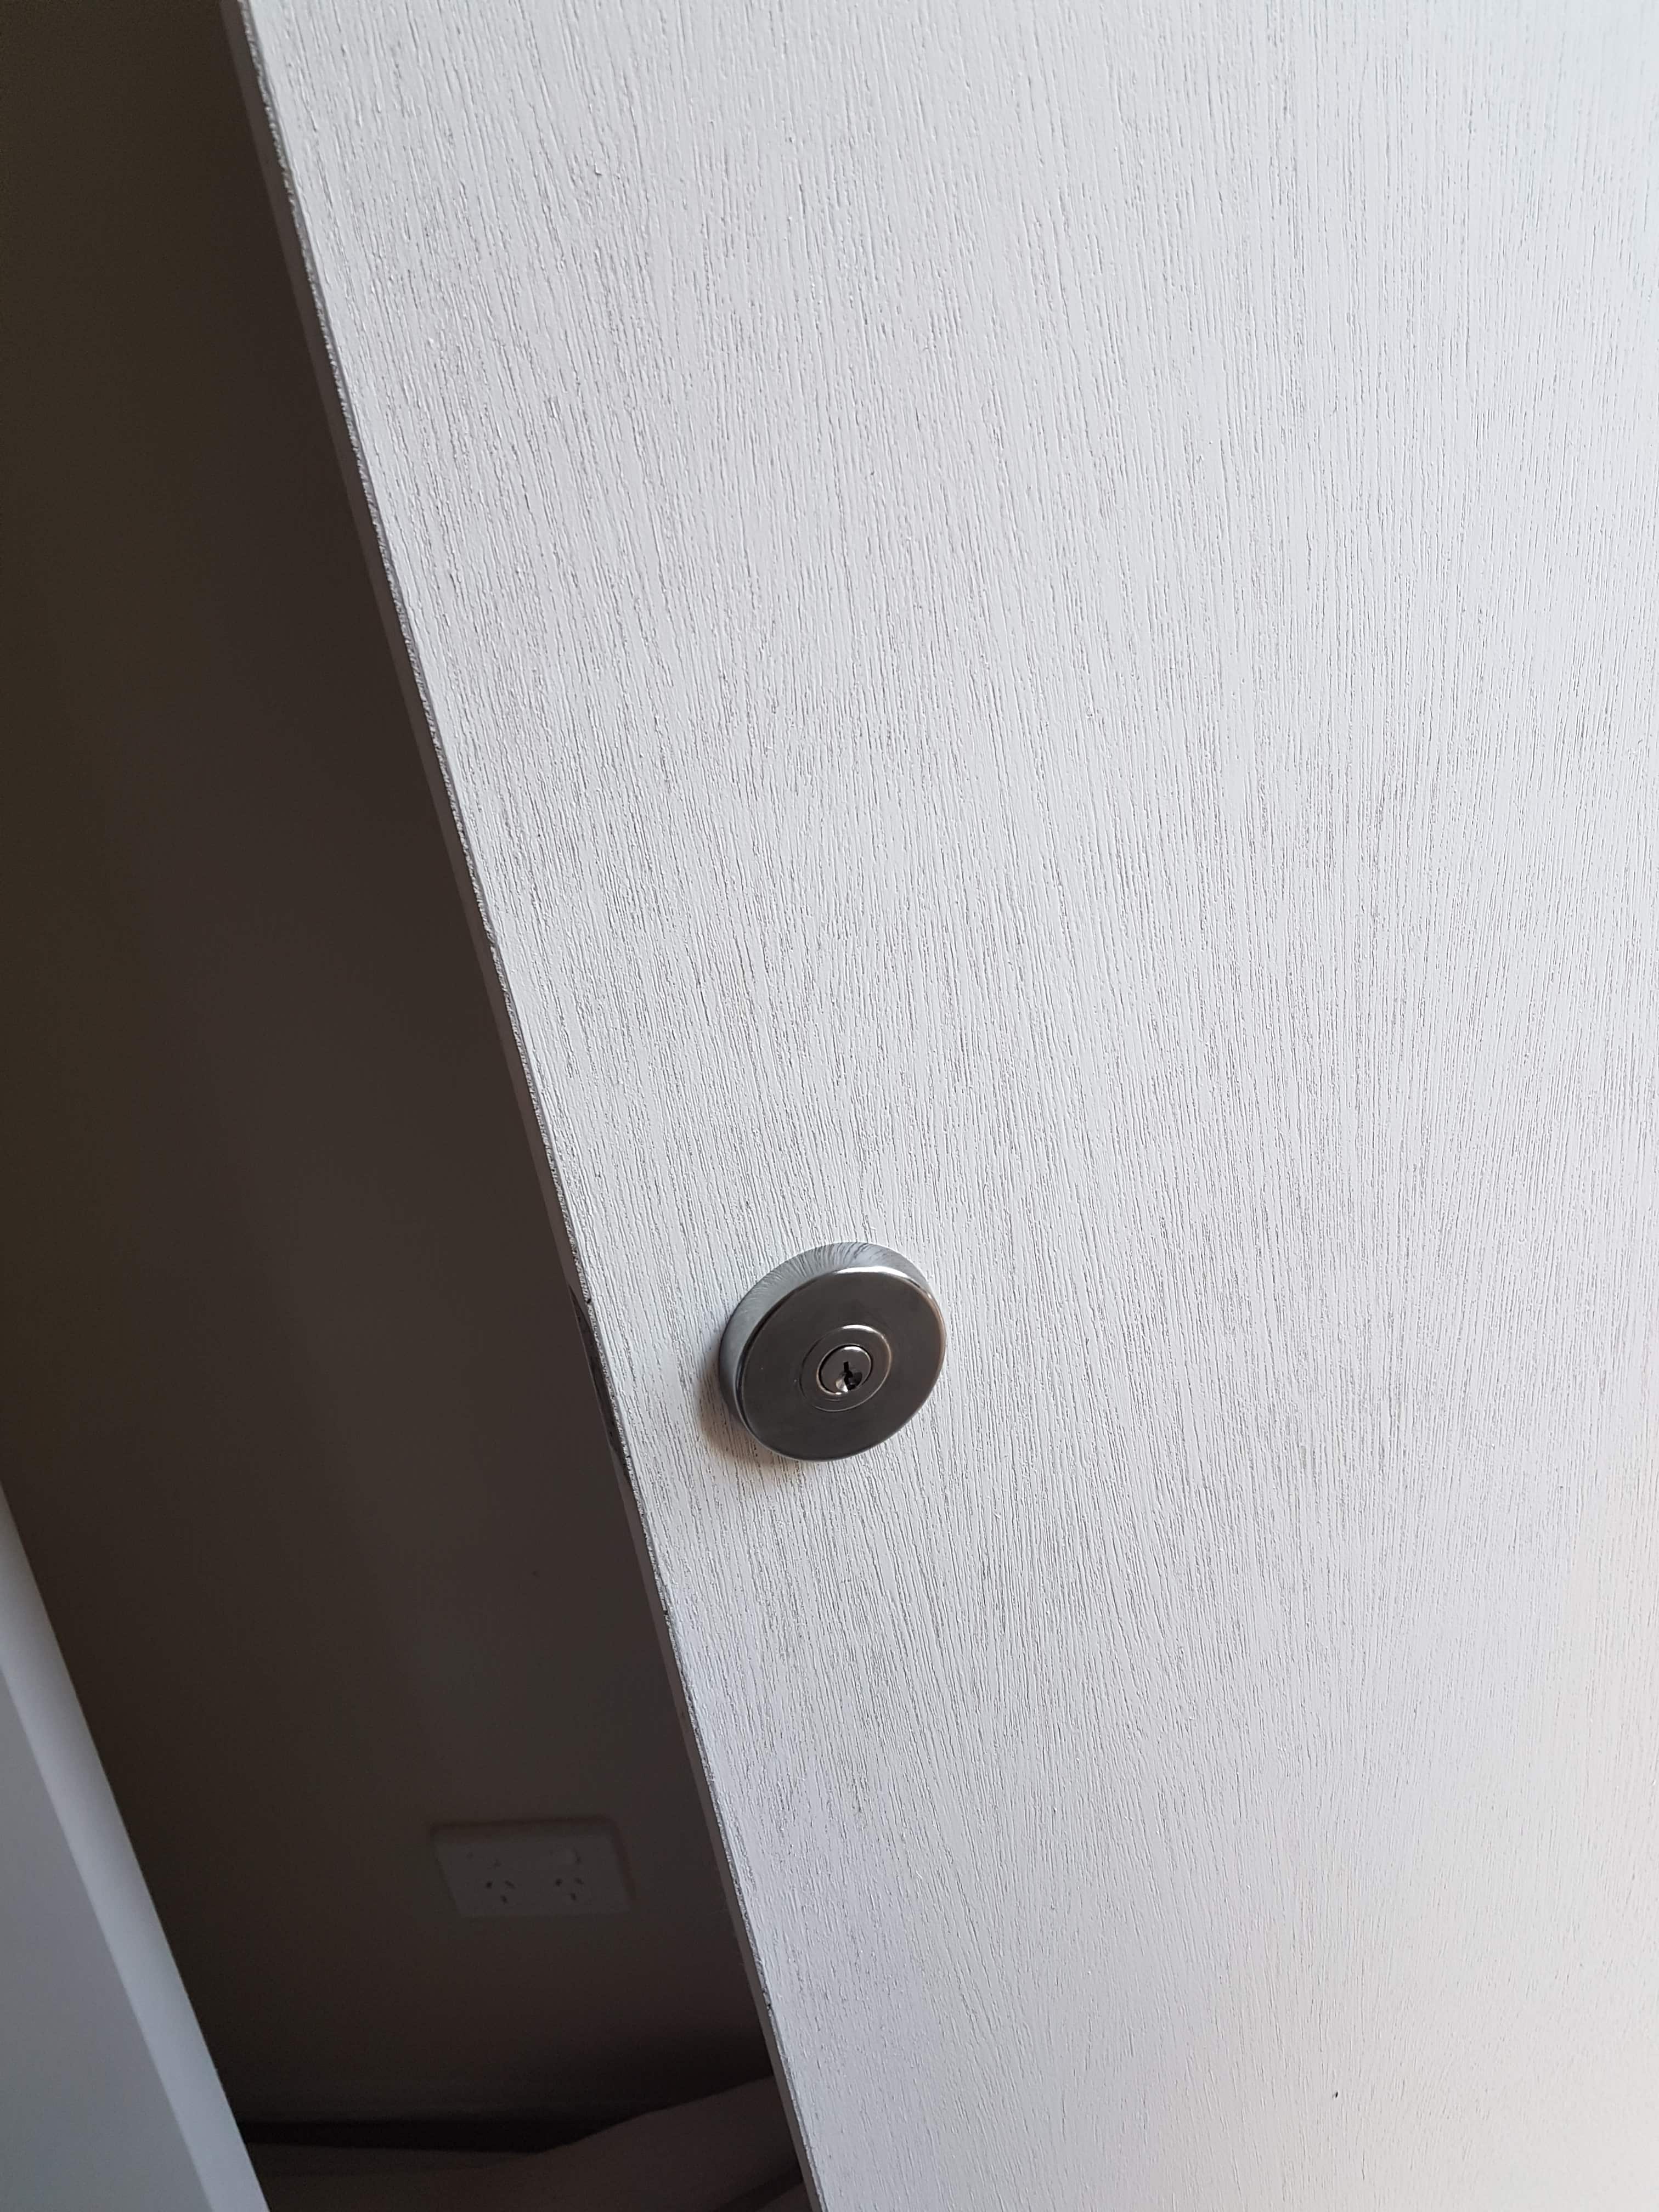 deadbolt lock installed inside the door